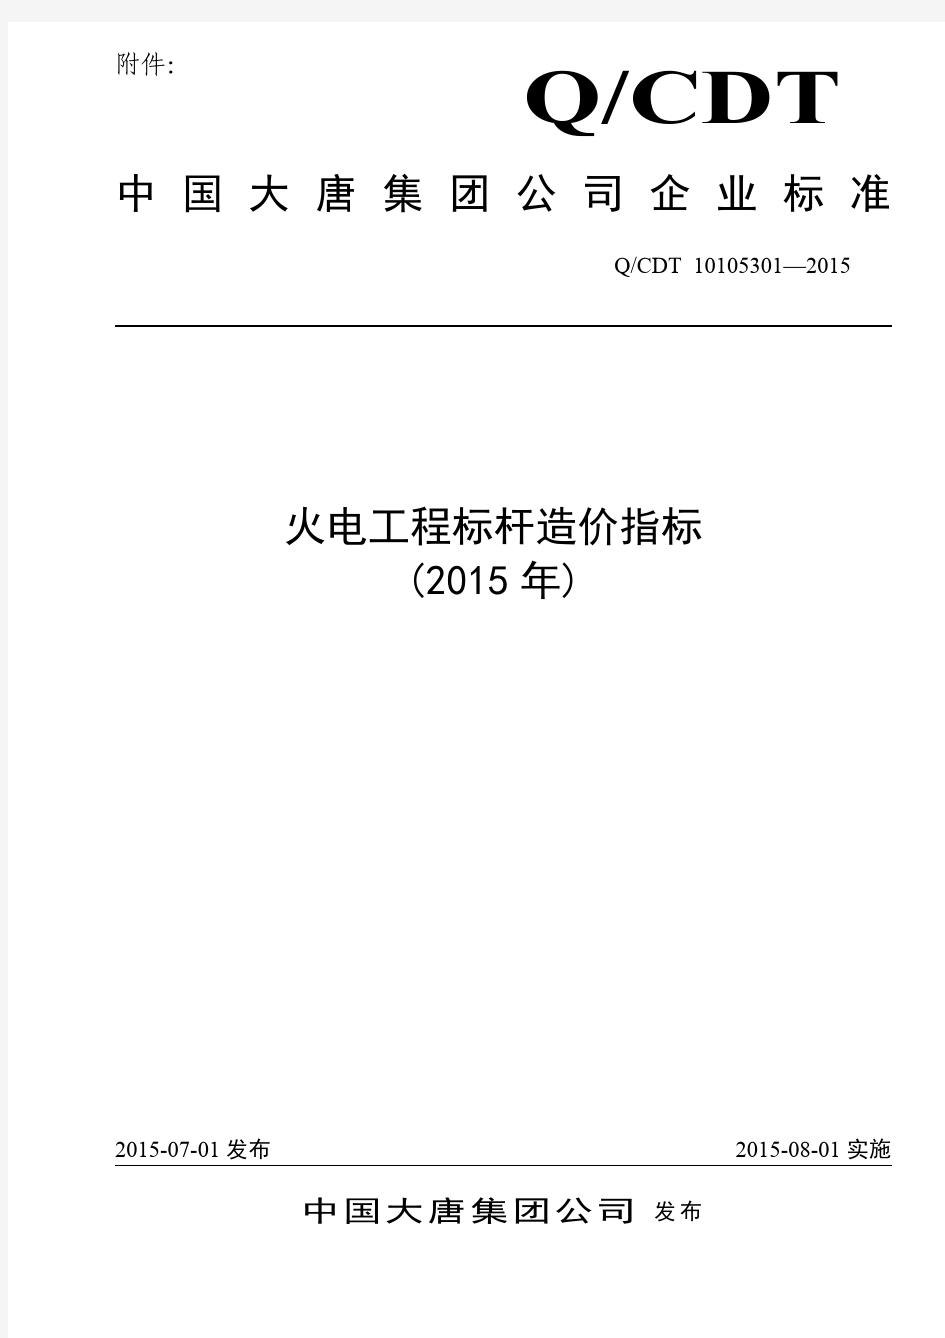 中国大唐集团公司火电工程标杆造价指标(2015年)》